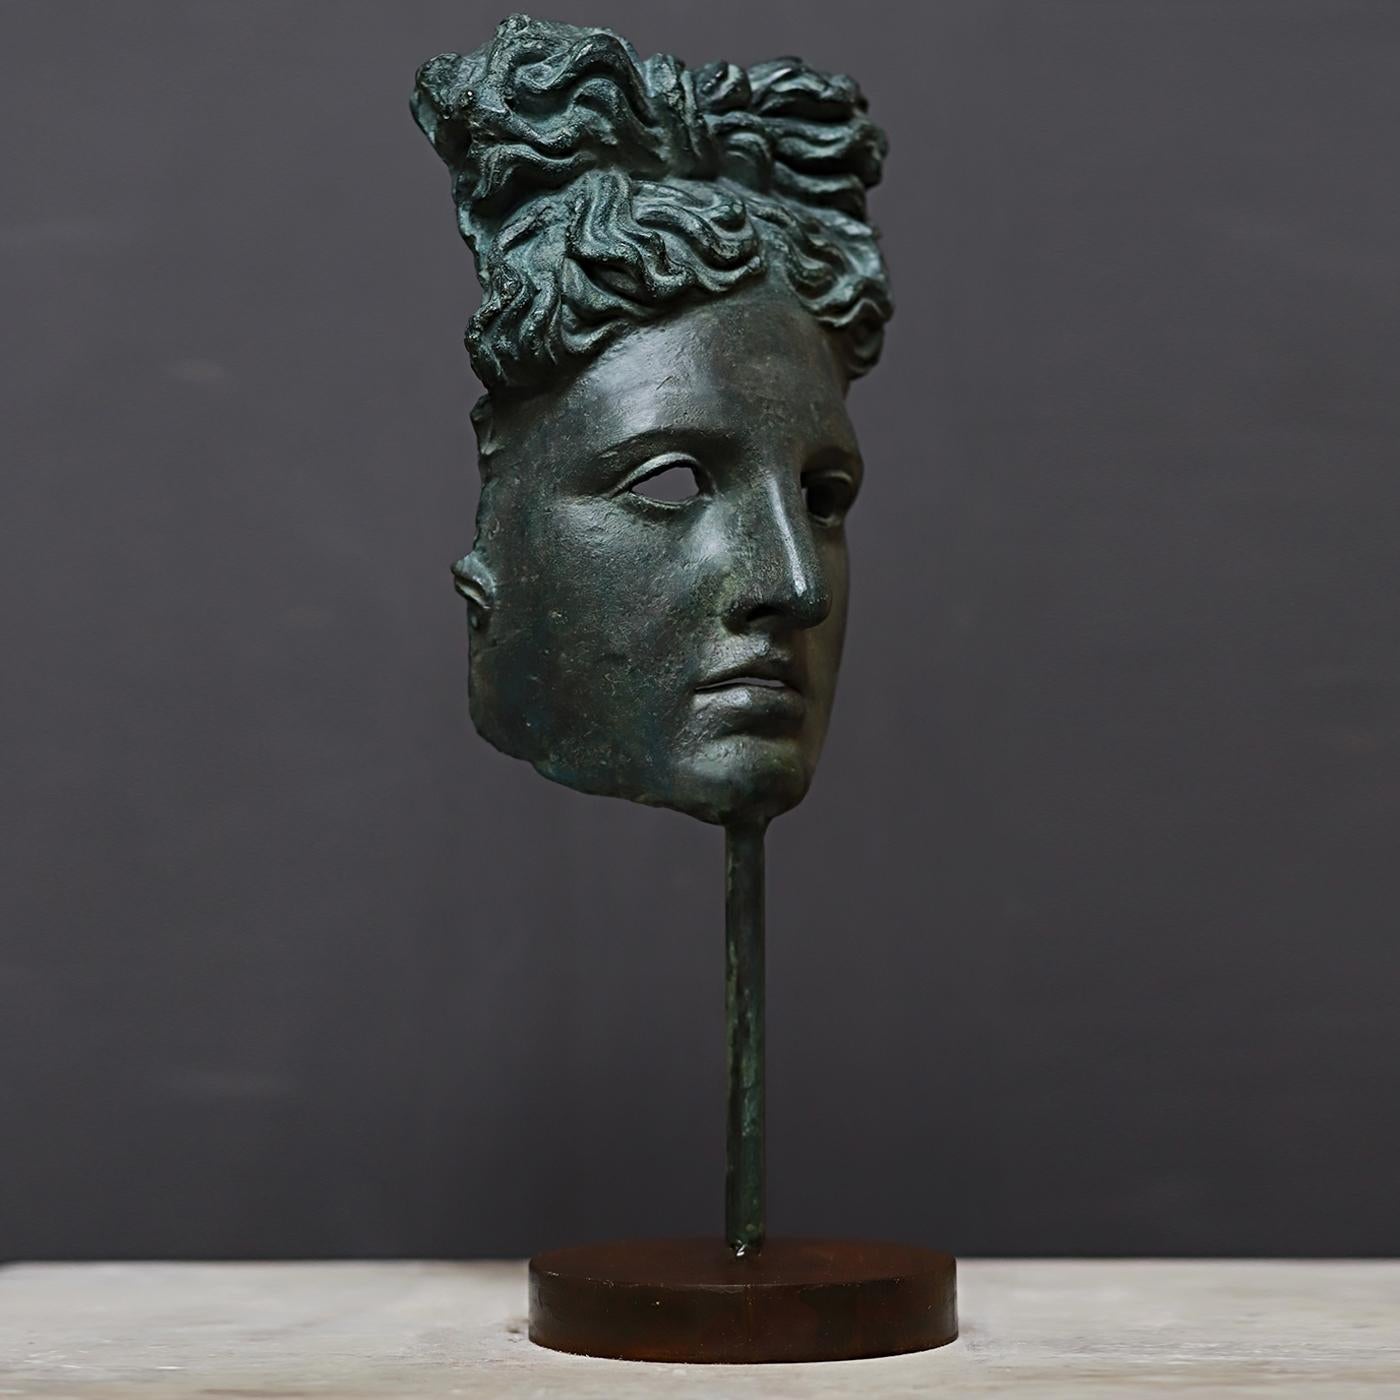 Superbe ajout à une collection personnelle ou magnifique cadeau pour un amateur d'antiquité, ce masque reproduit avec une précision étonnante l'iconographie du dieu grec Apollon, telle qu'elle apparaît sur la statue de marbre post-hellénistique